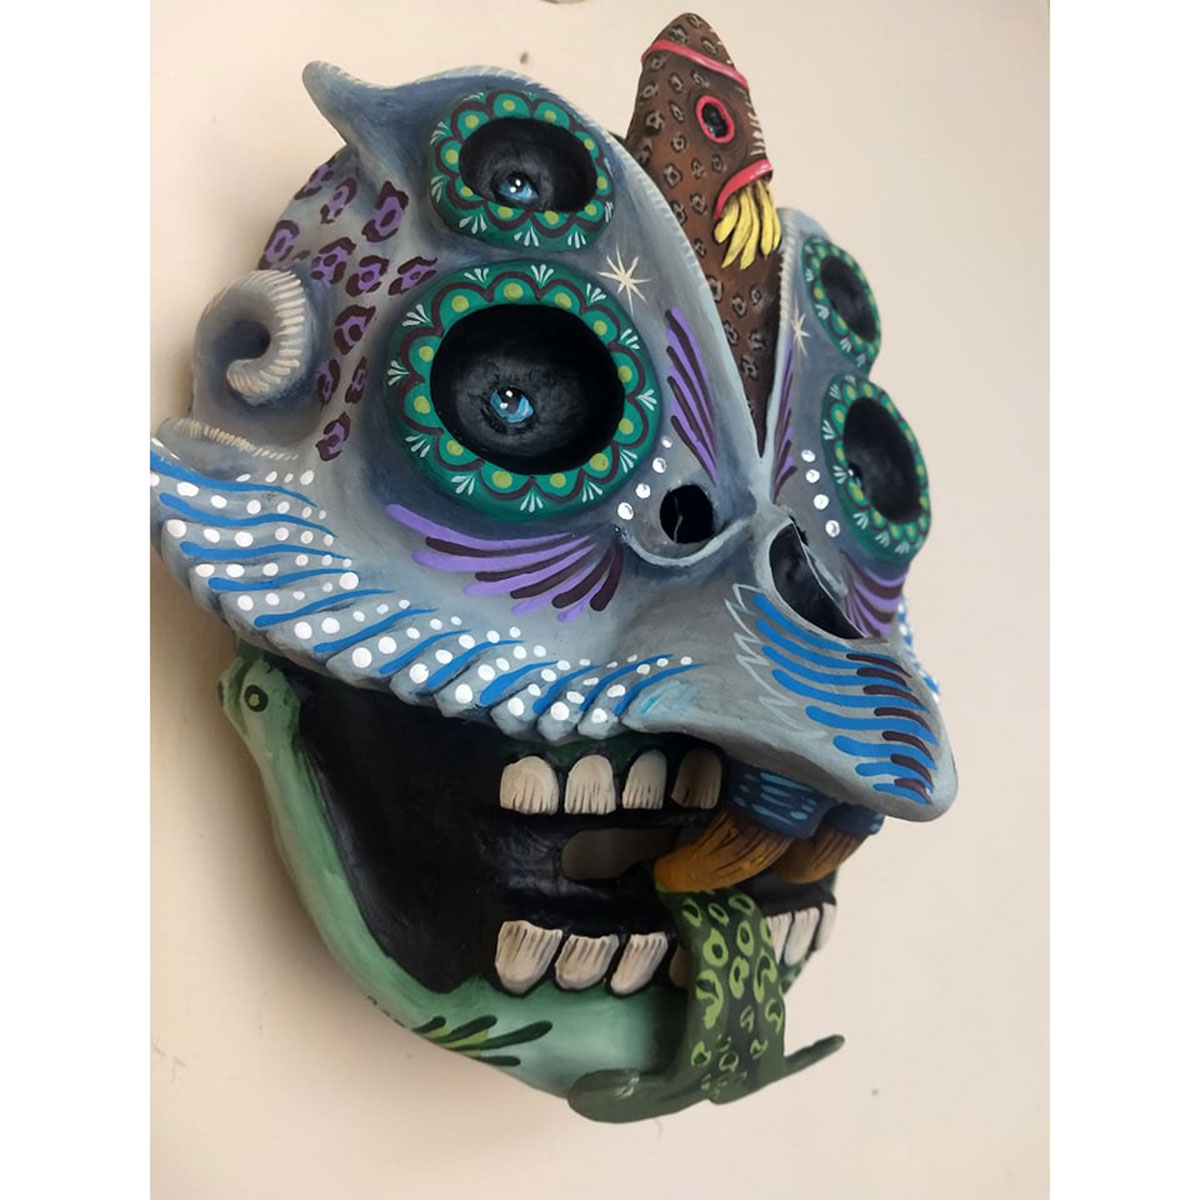 Cartoneria (Mexican Paper Mache) Isaias Alejandro Morales Delgado: Handmade Wearable Mask – Surgimiento (Emergence) Alebrijes